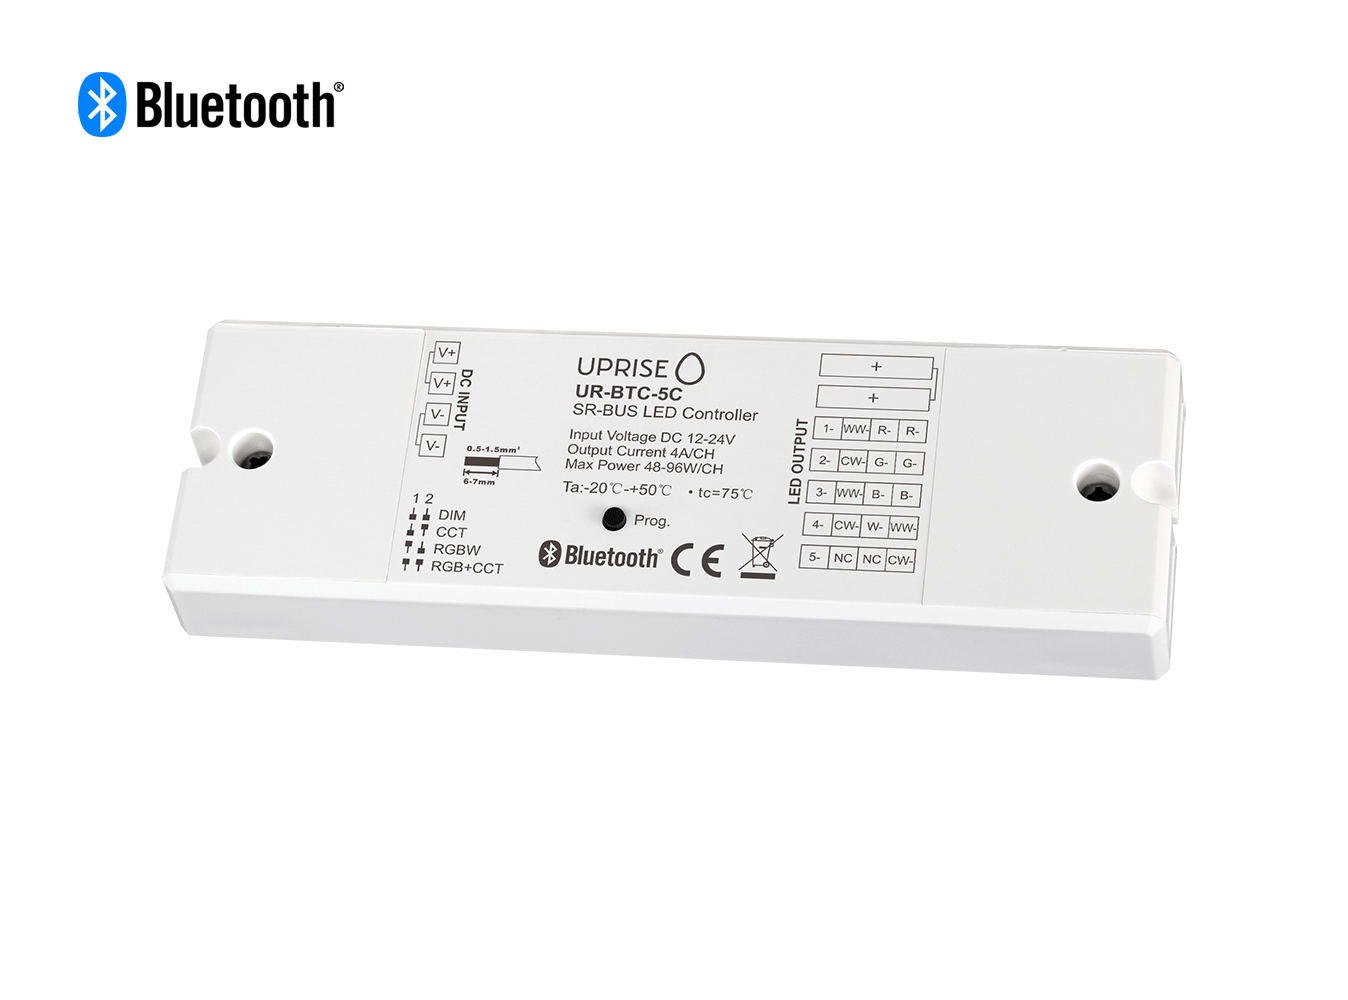 Bluetooth 5CH LED Controller Receiver For RGBCW (12V-24V) Overview 2 - UR-BTC-5C